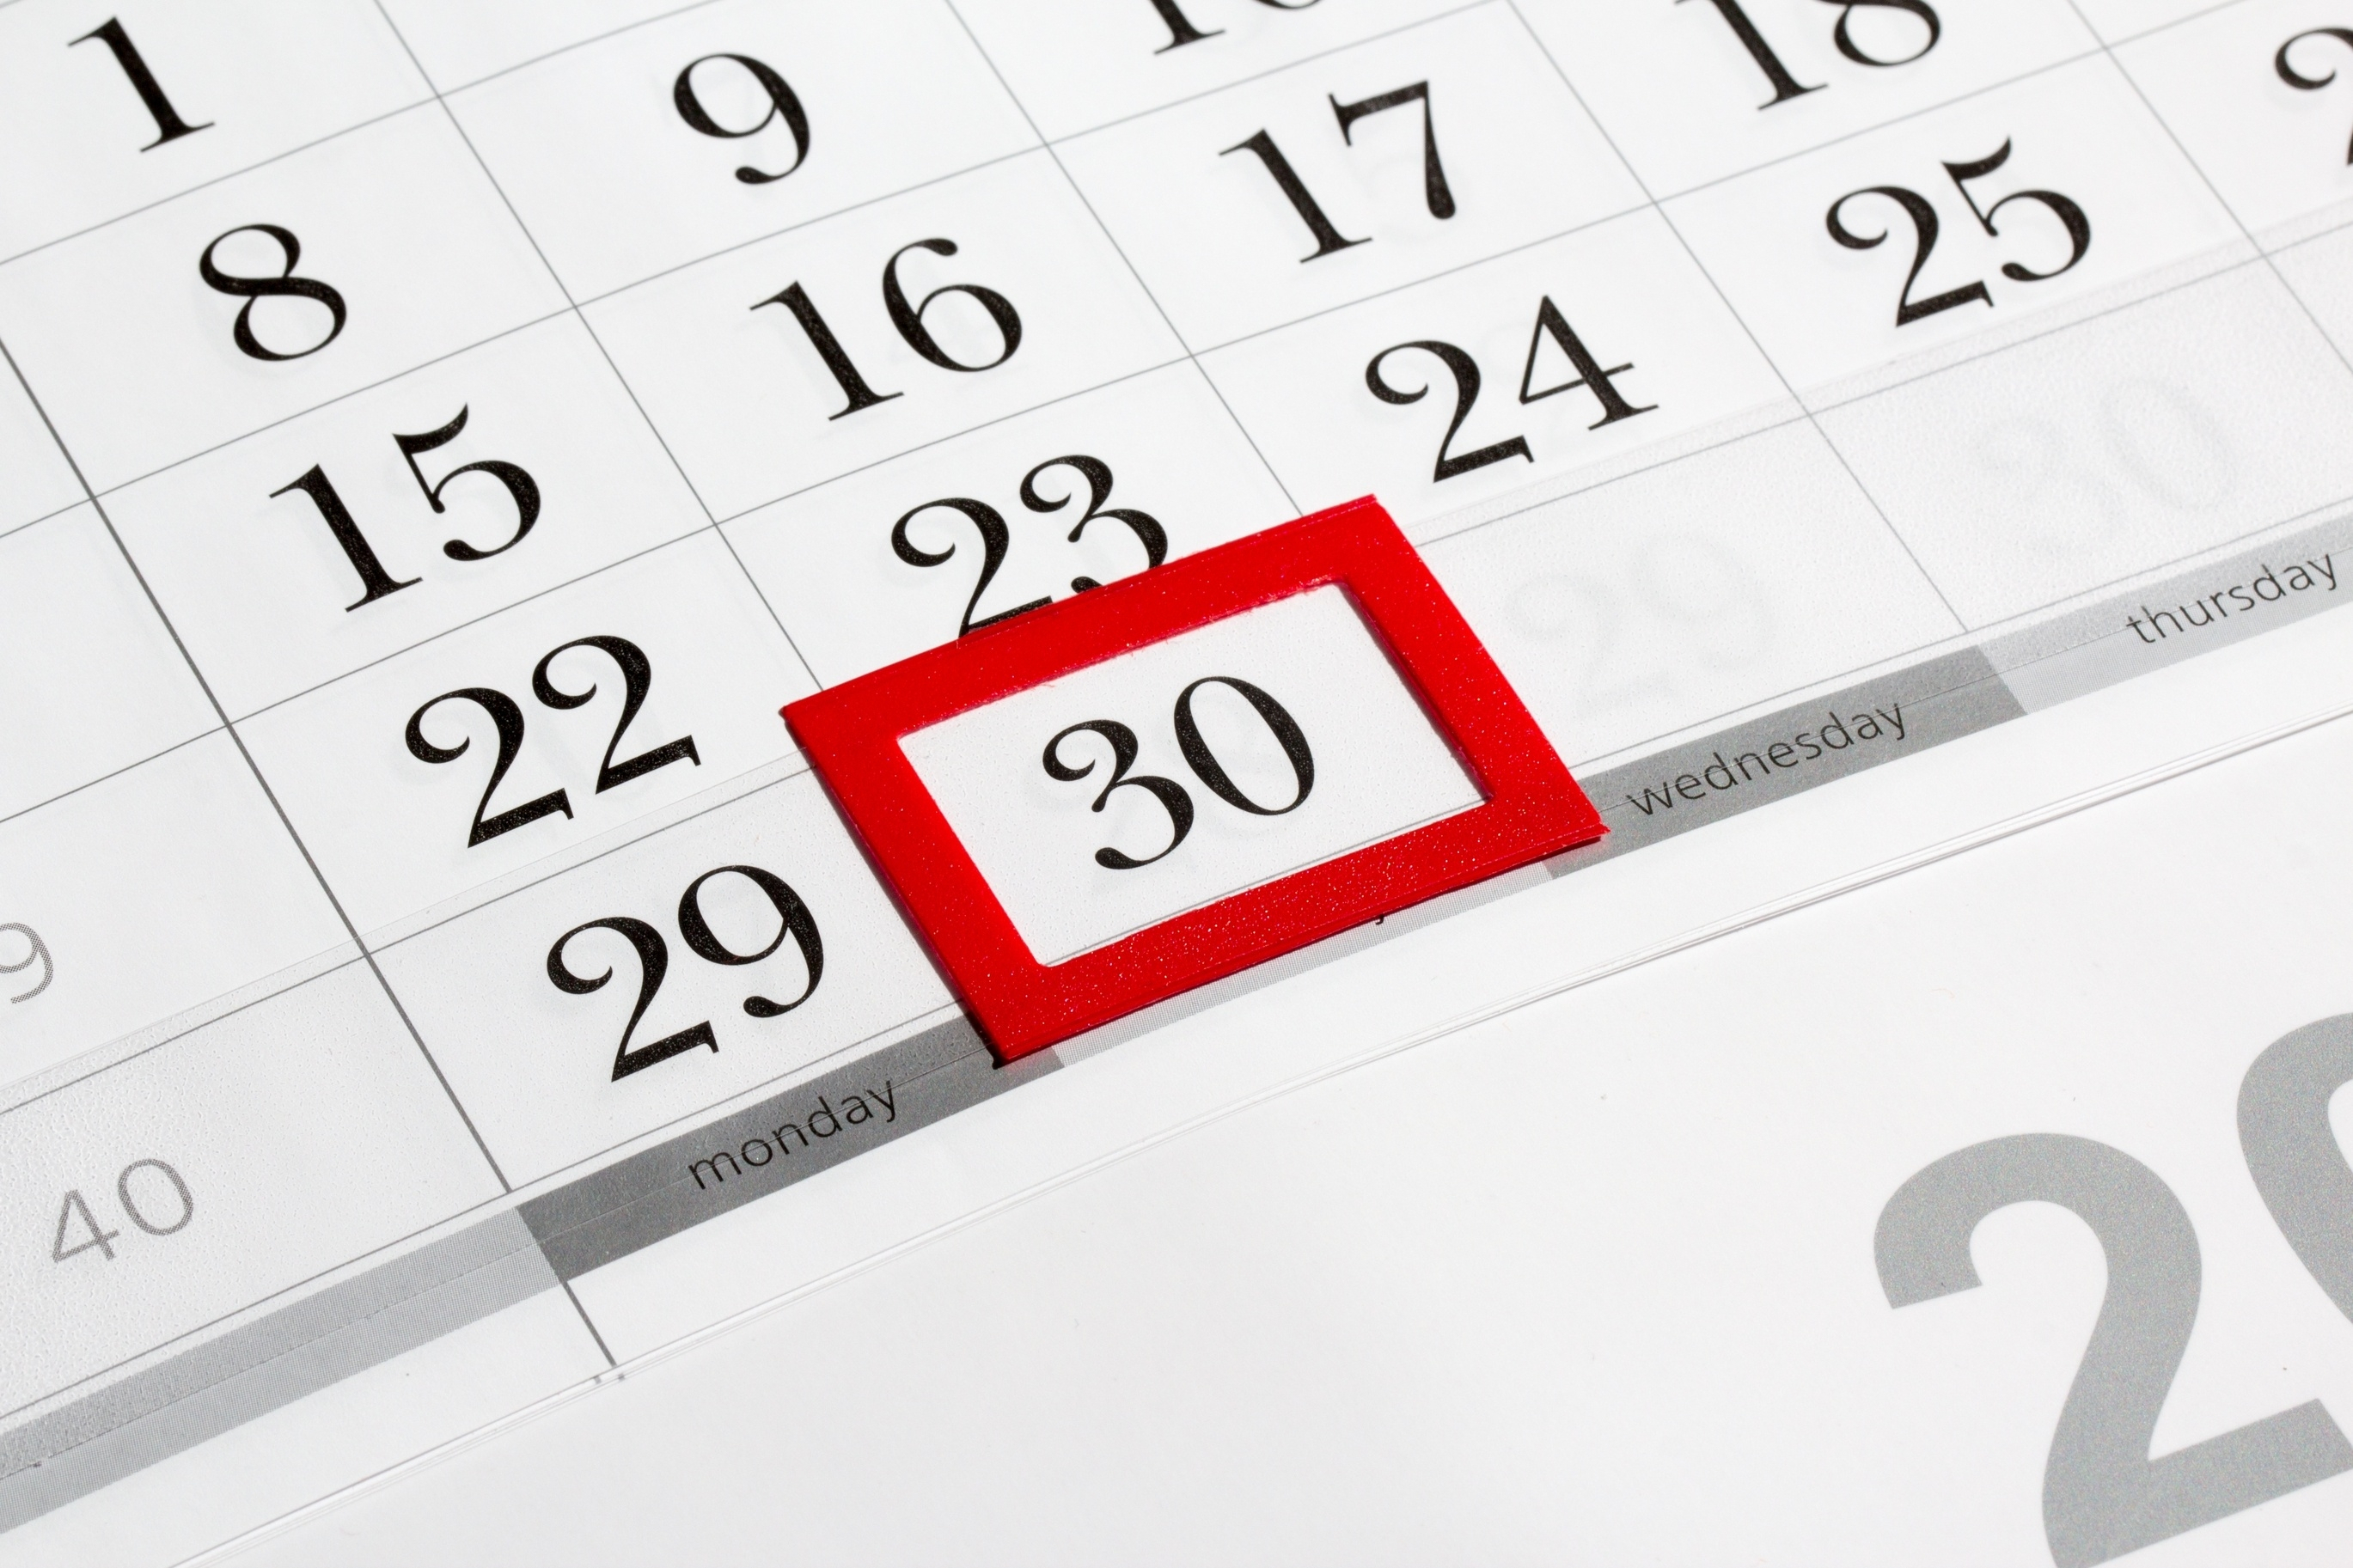 Calendar Countdown Without Weekends | Calendar Template for Countdown Without Weekends